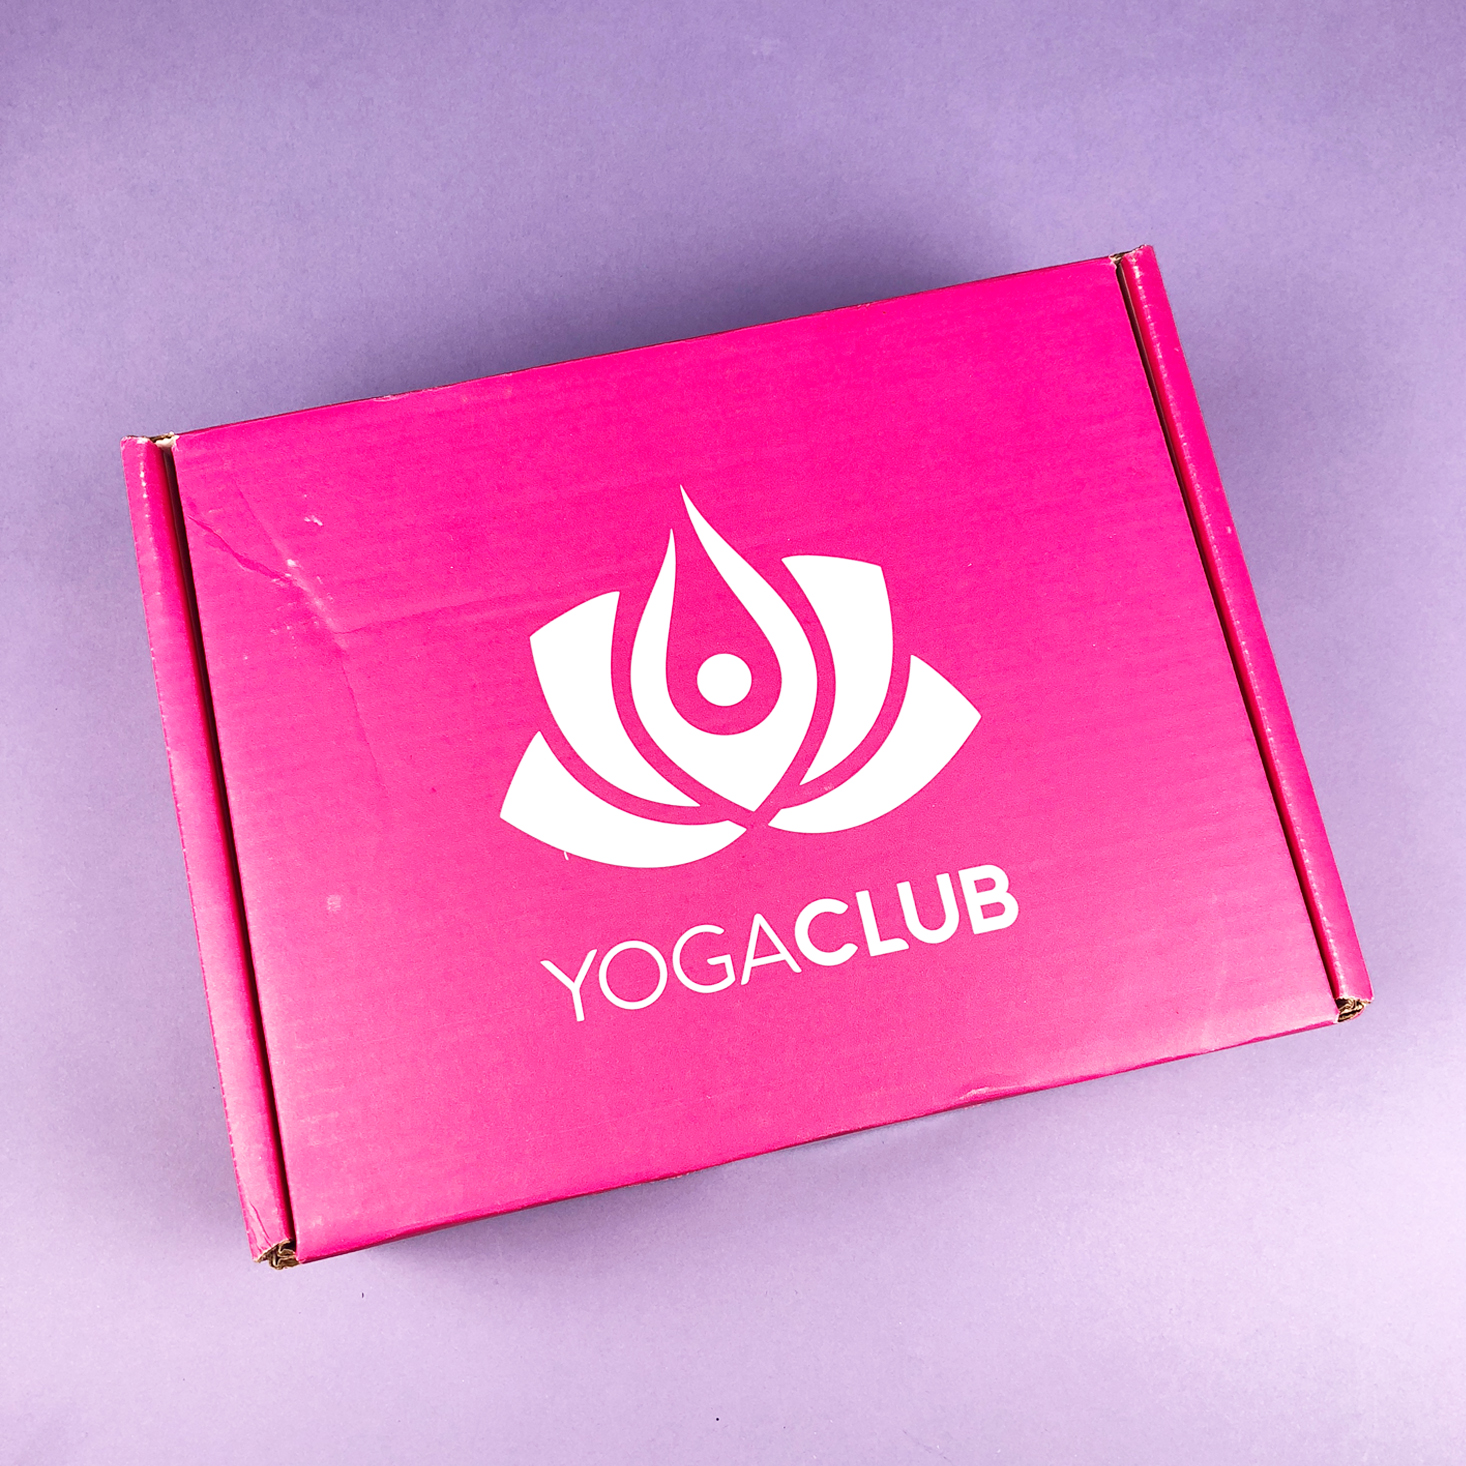 yoga club box closed